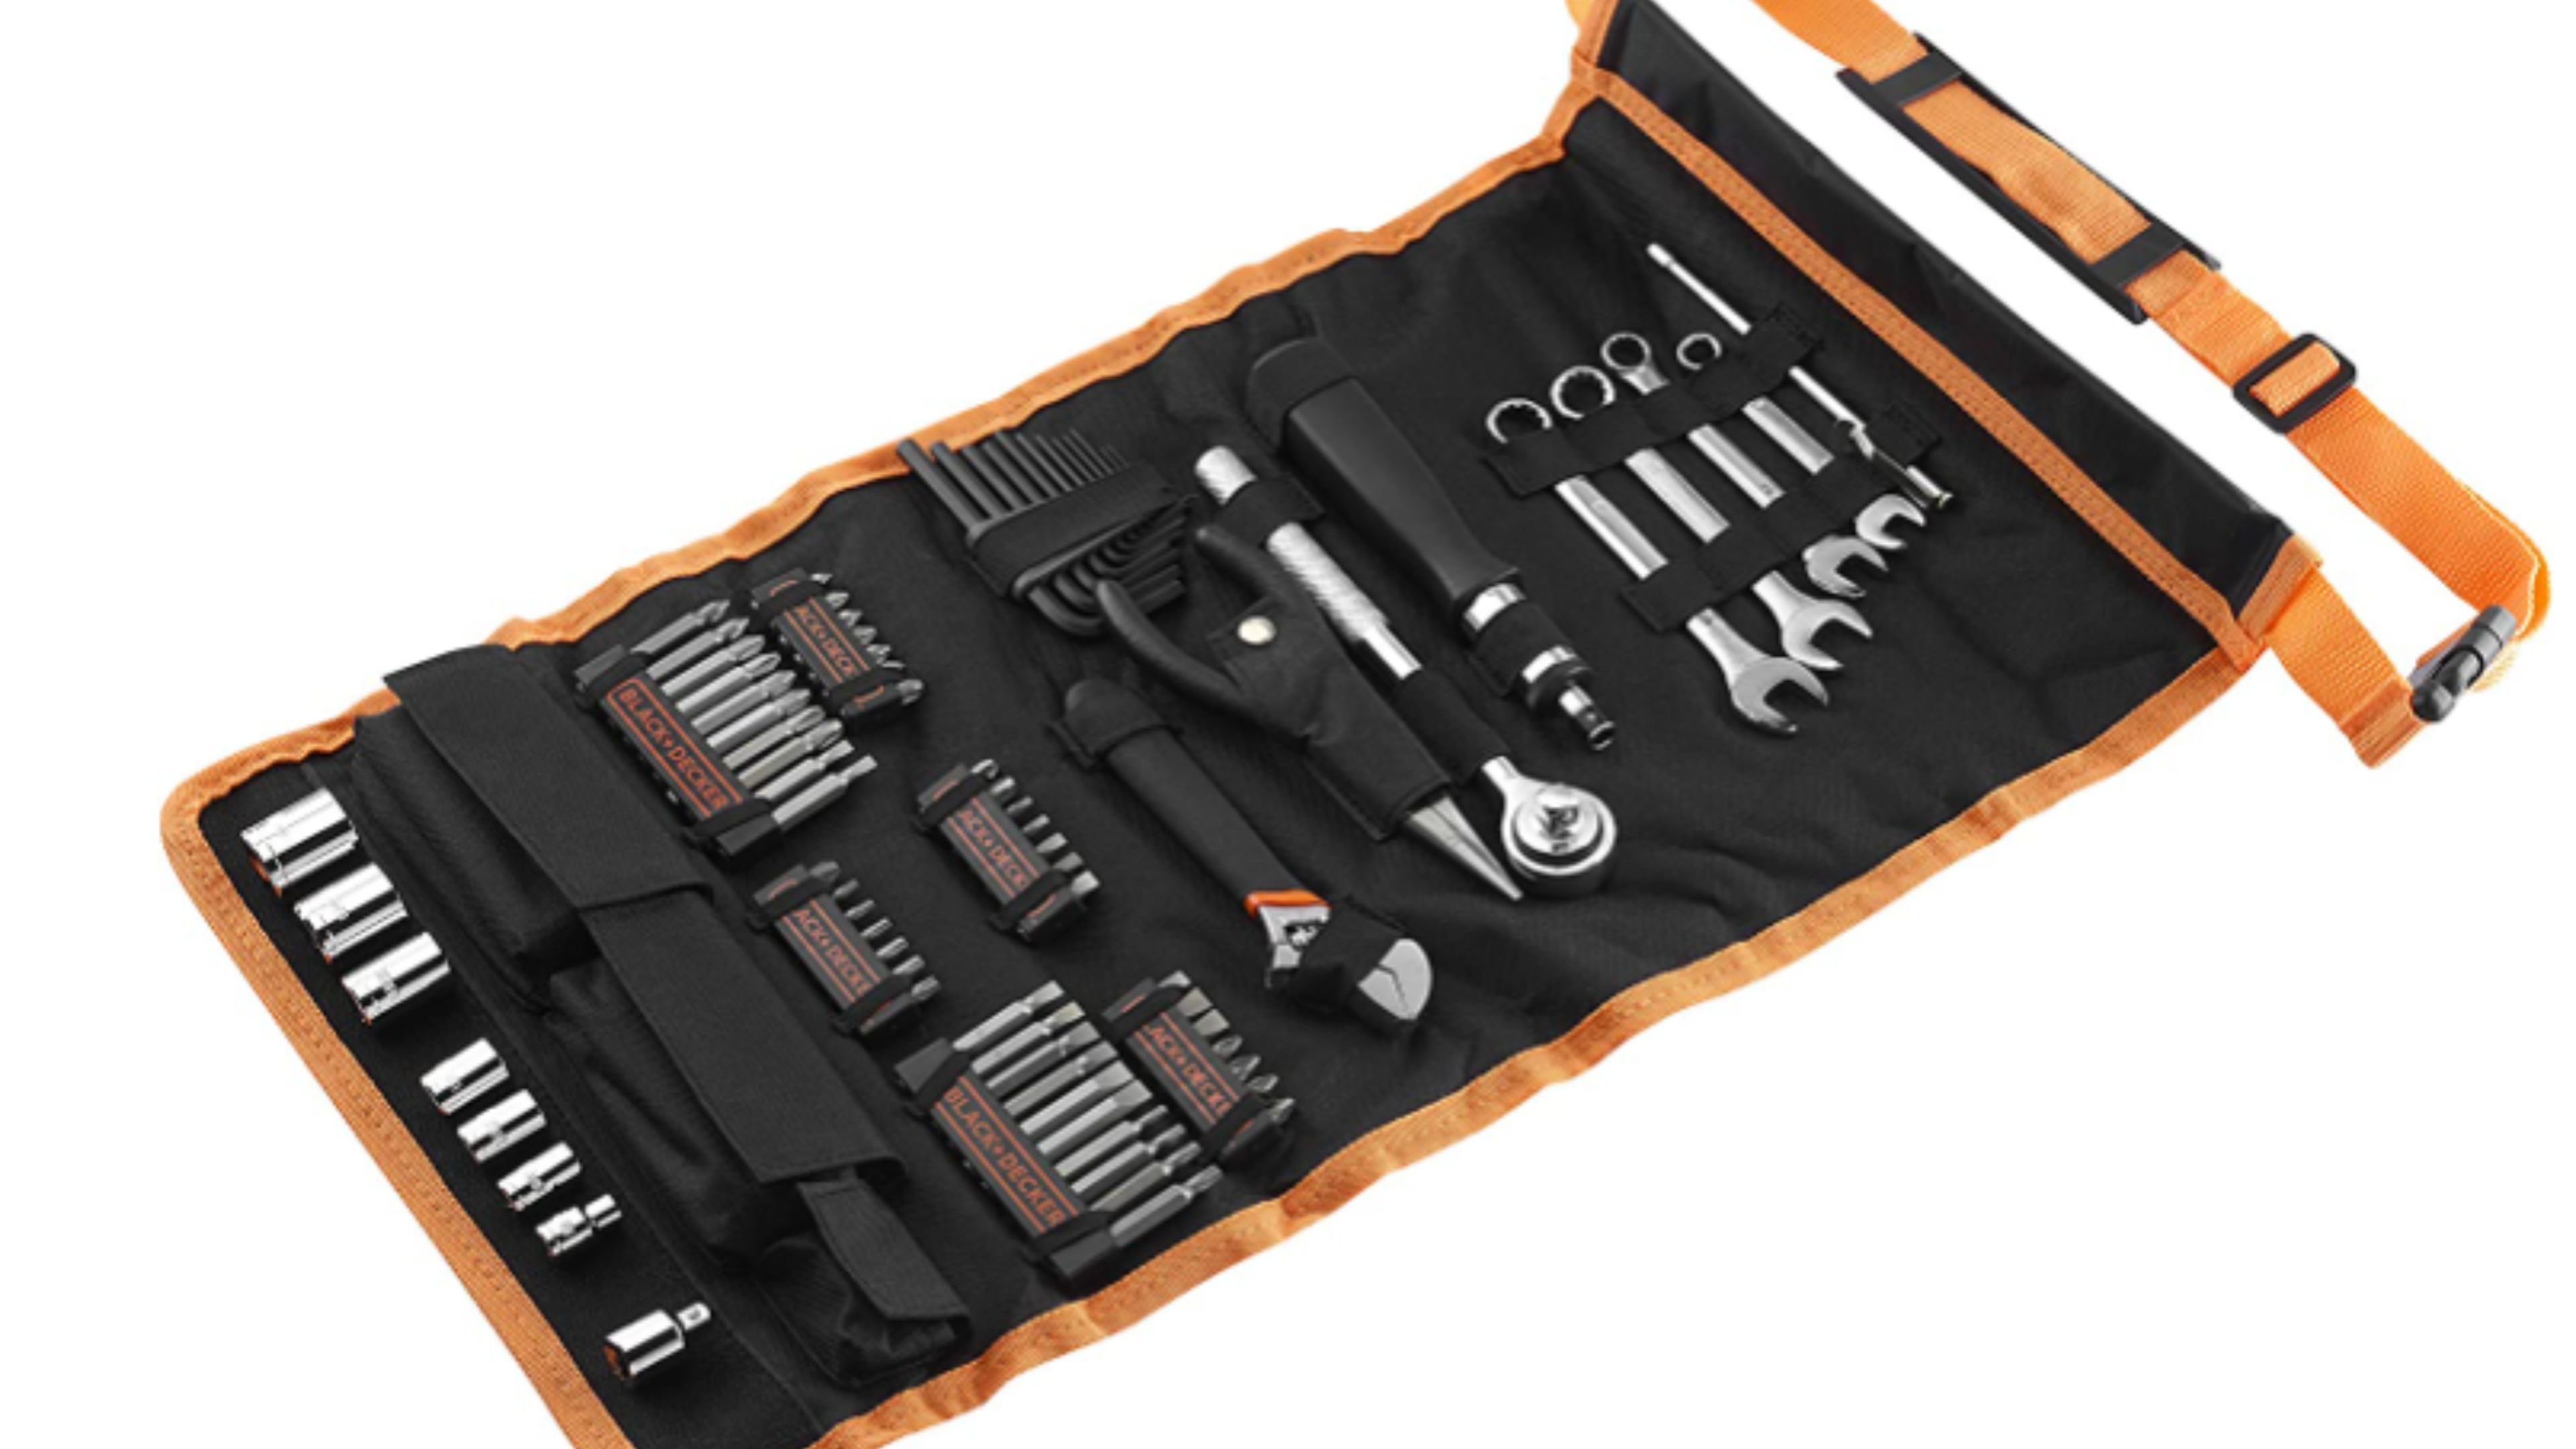 Maletín de herramientas Black&Decker a la venta en Amazon